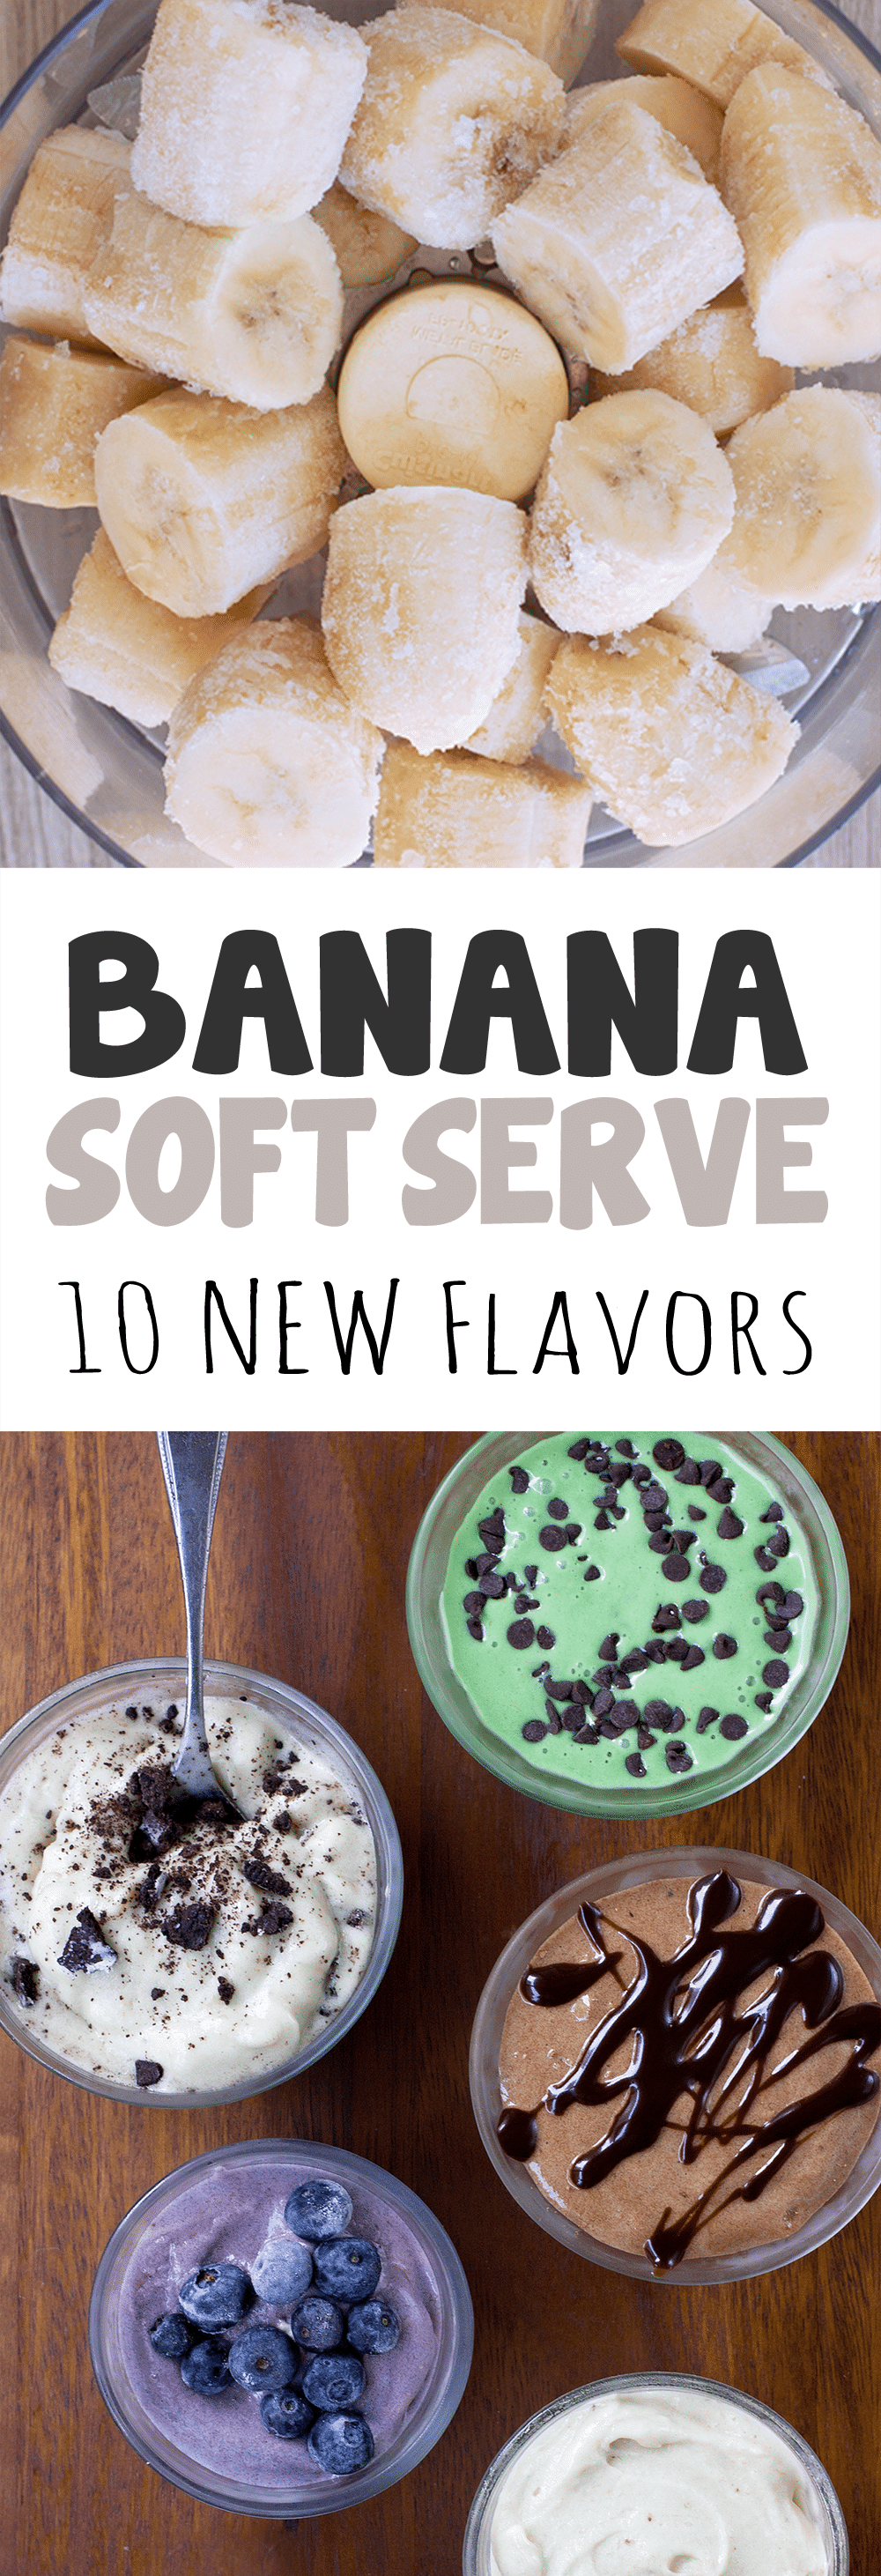 How to make banana ice cream with ice cream maker Banana Ice Cream 10 New Recipes